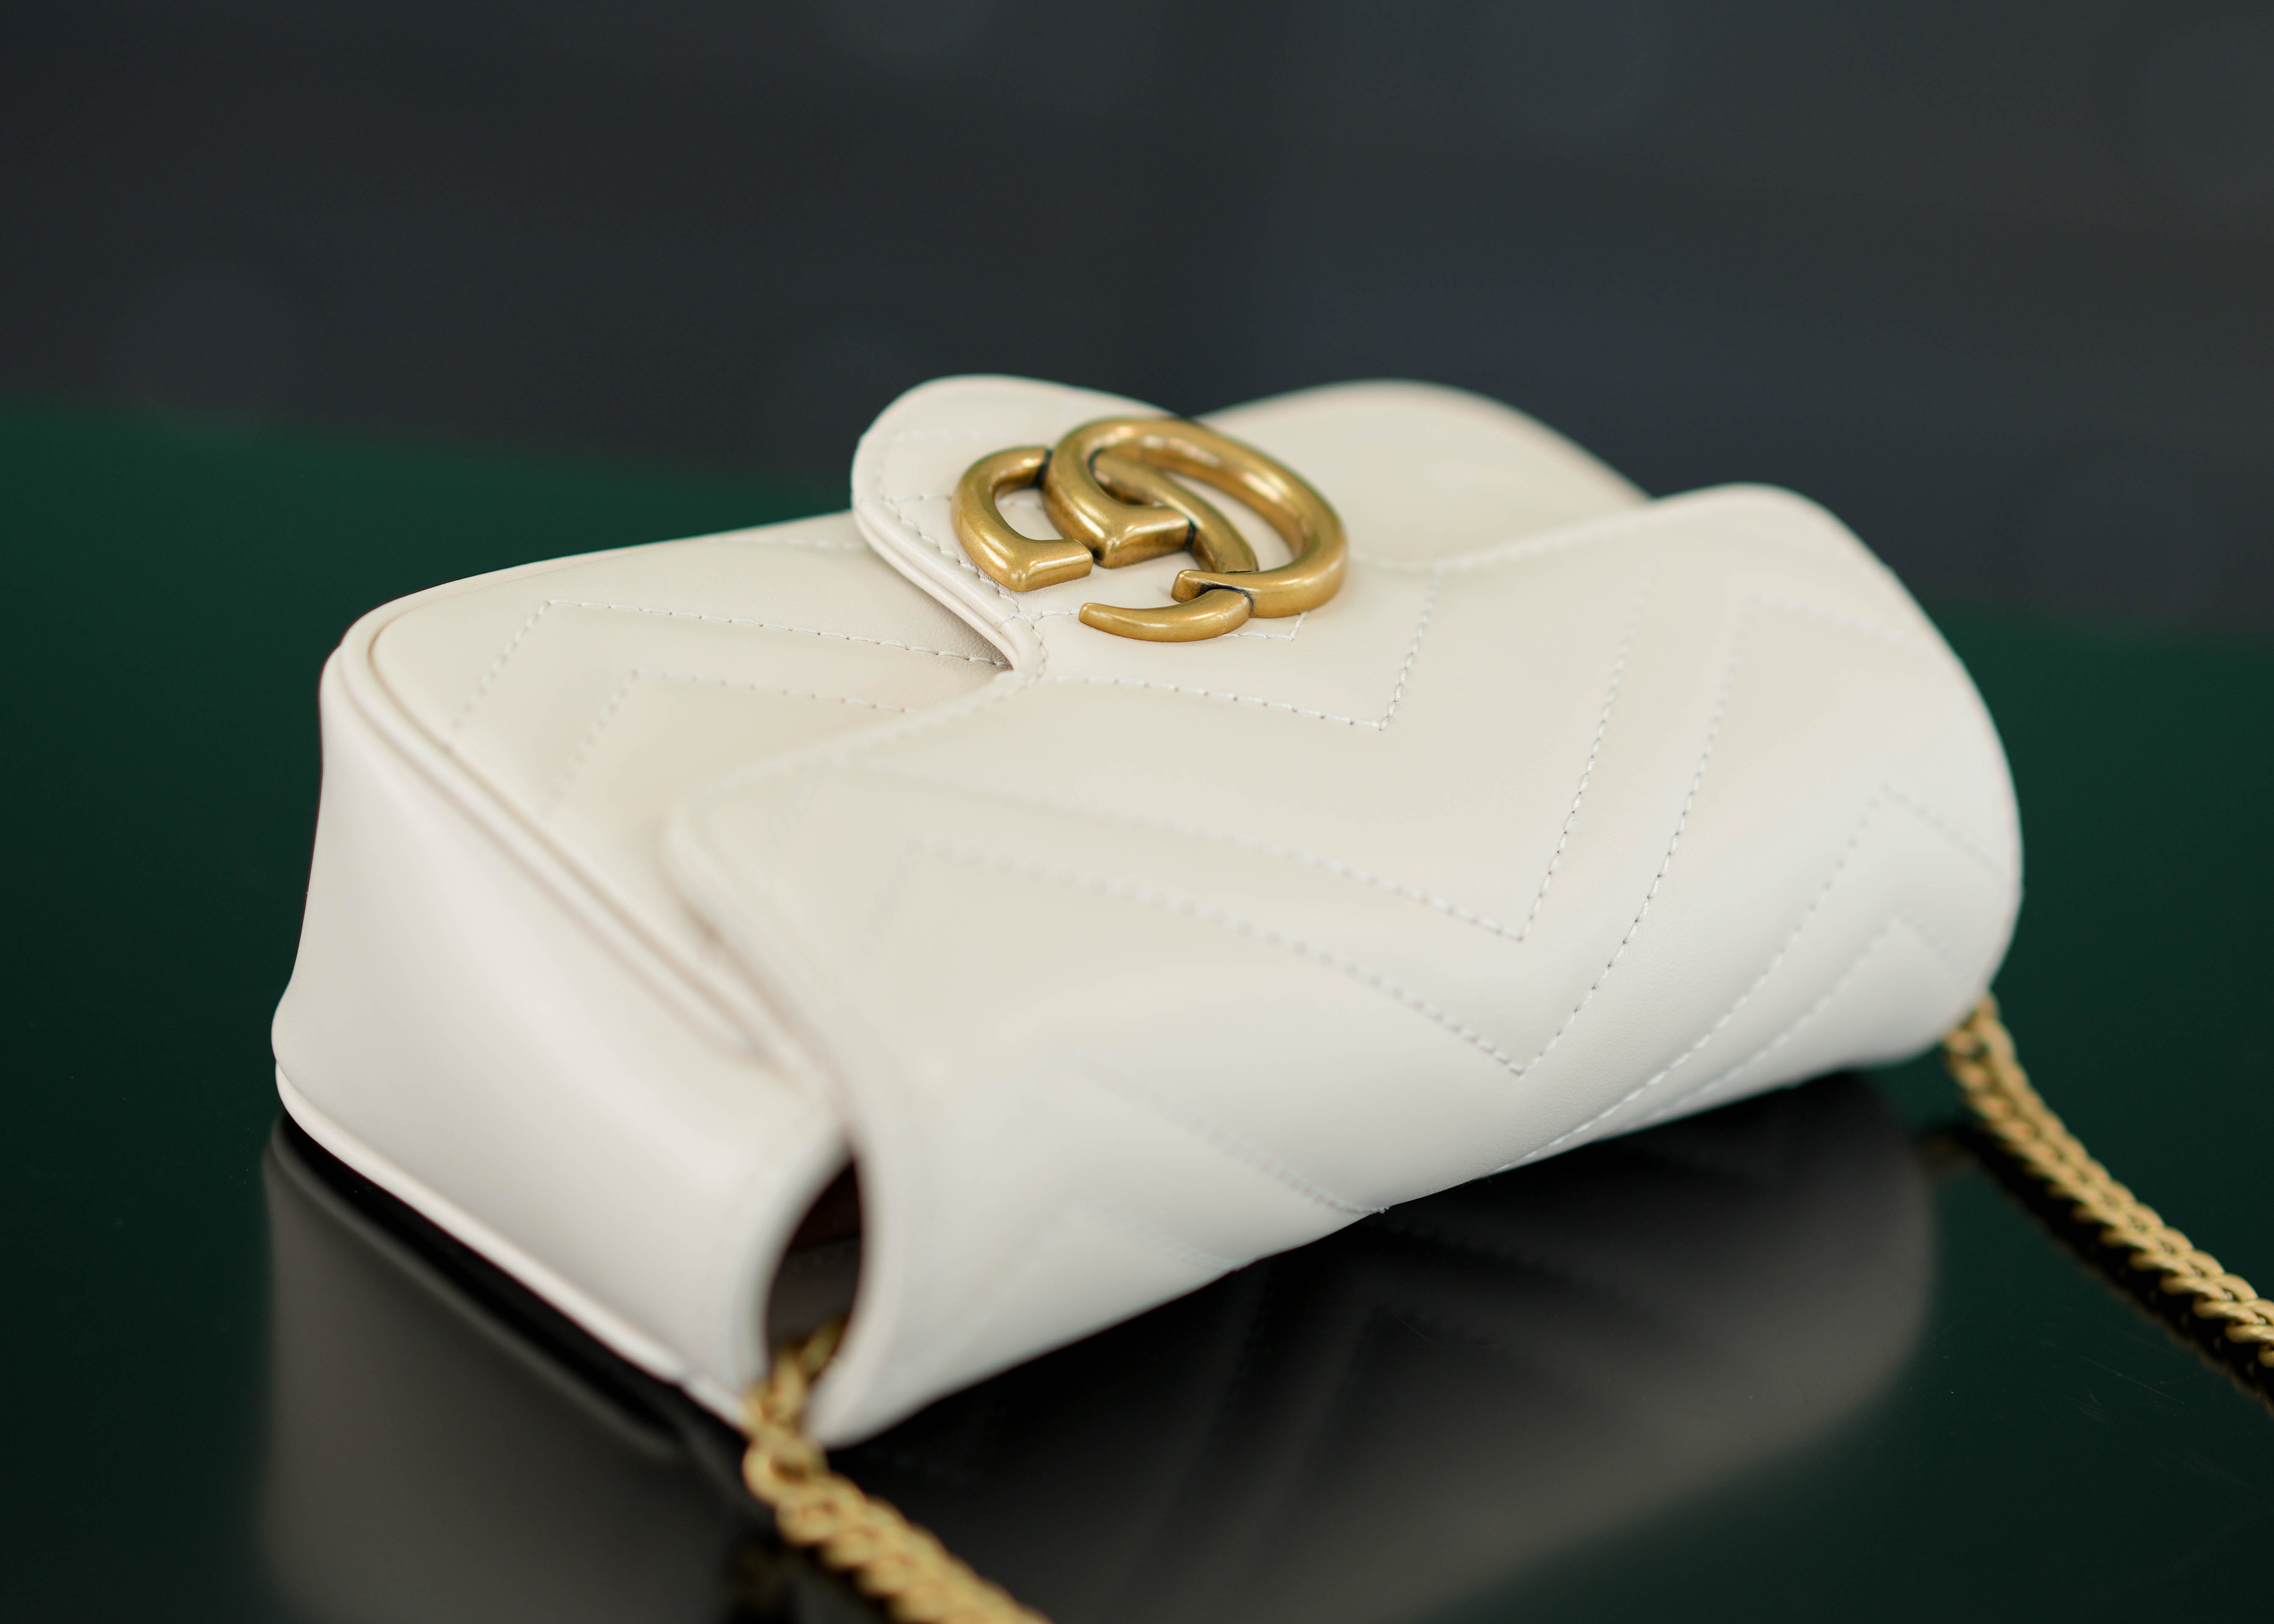 正品级Marmont系列肩背包经典款白色mini16.5cm原厂皮全铜五金正品售价108,500GG家的